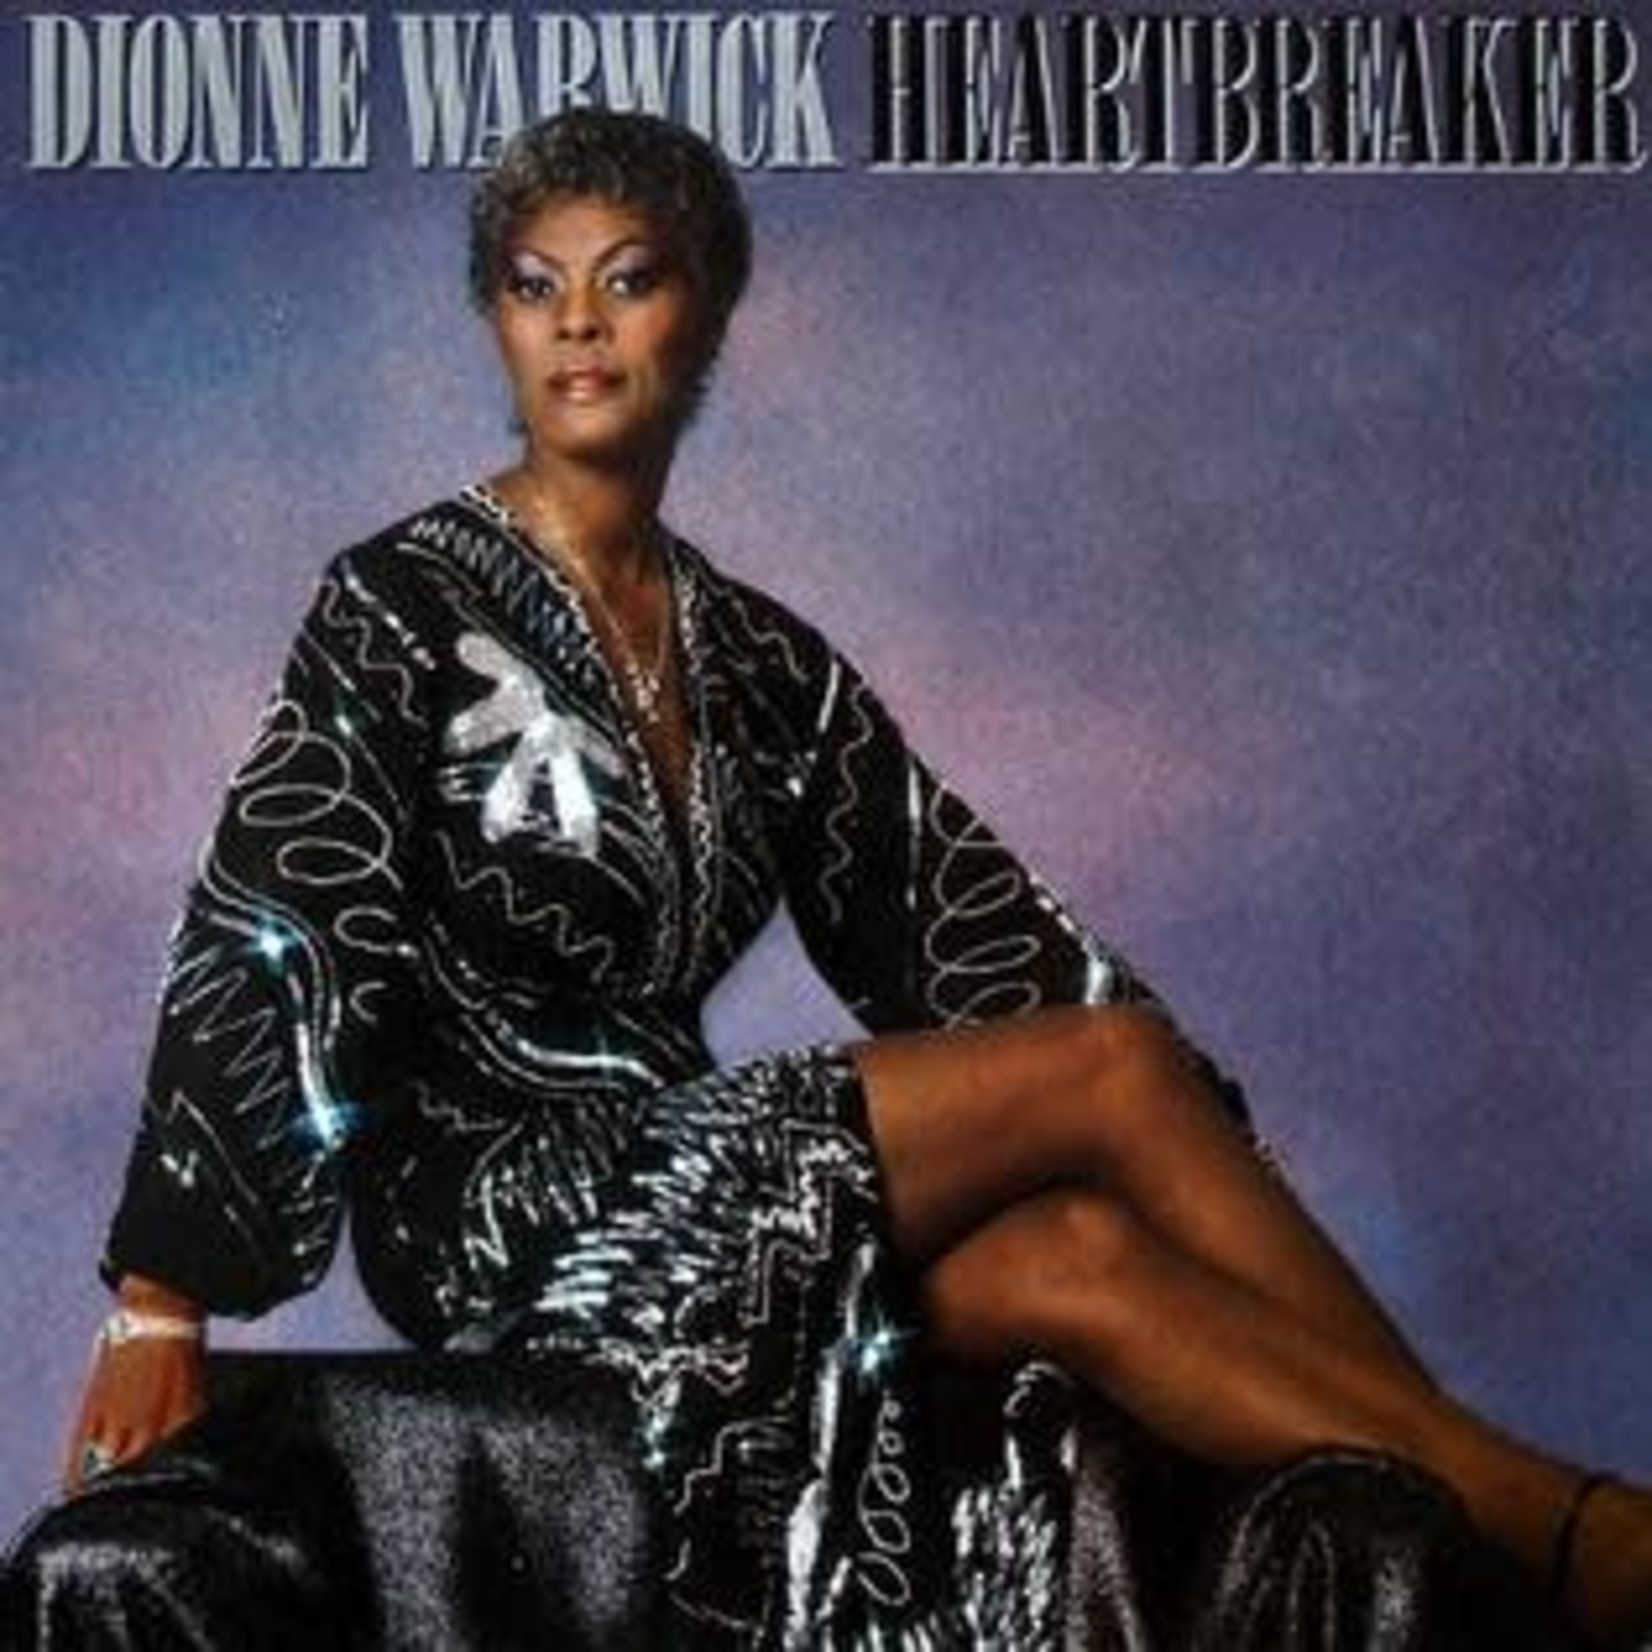 [Vintage] Dionne Warwick - Heartbreaker